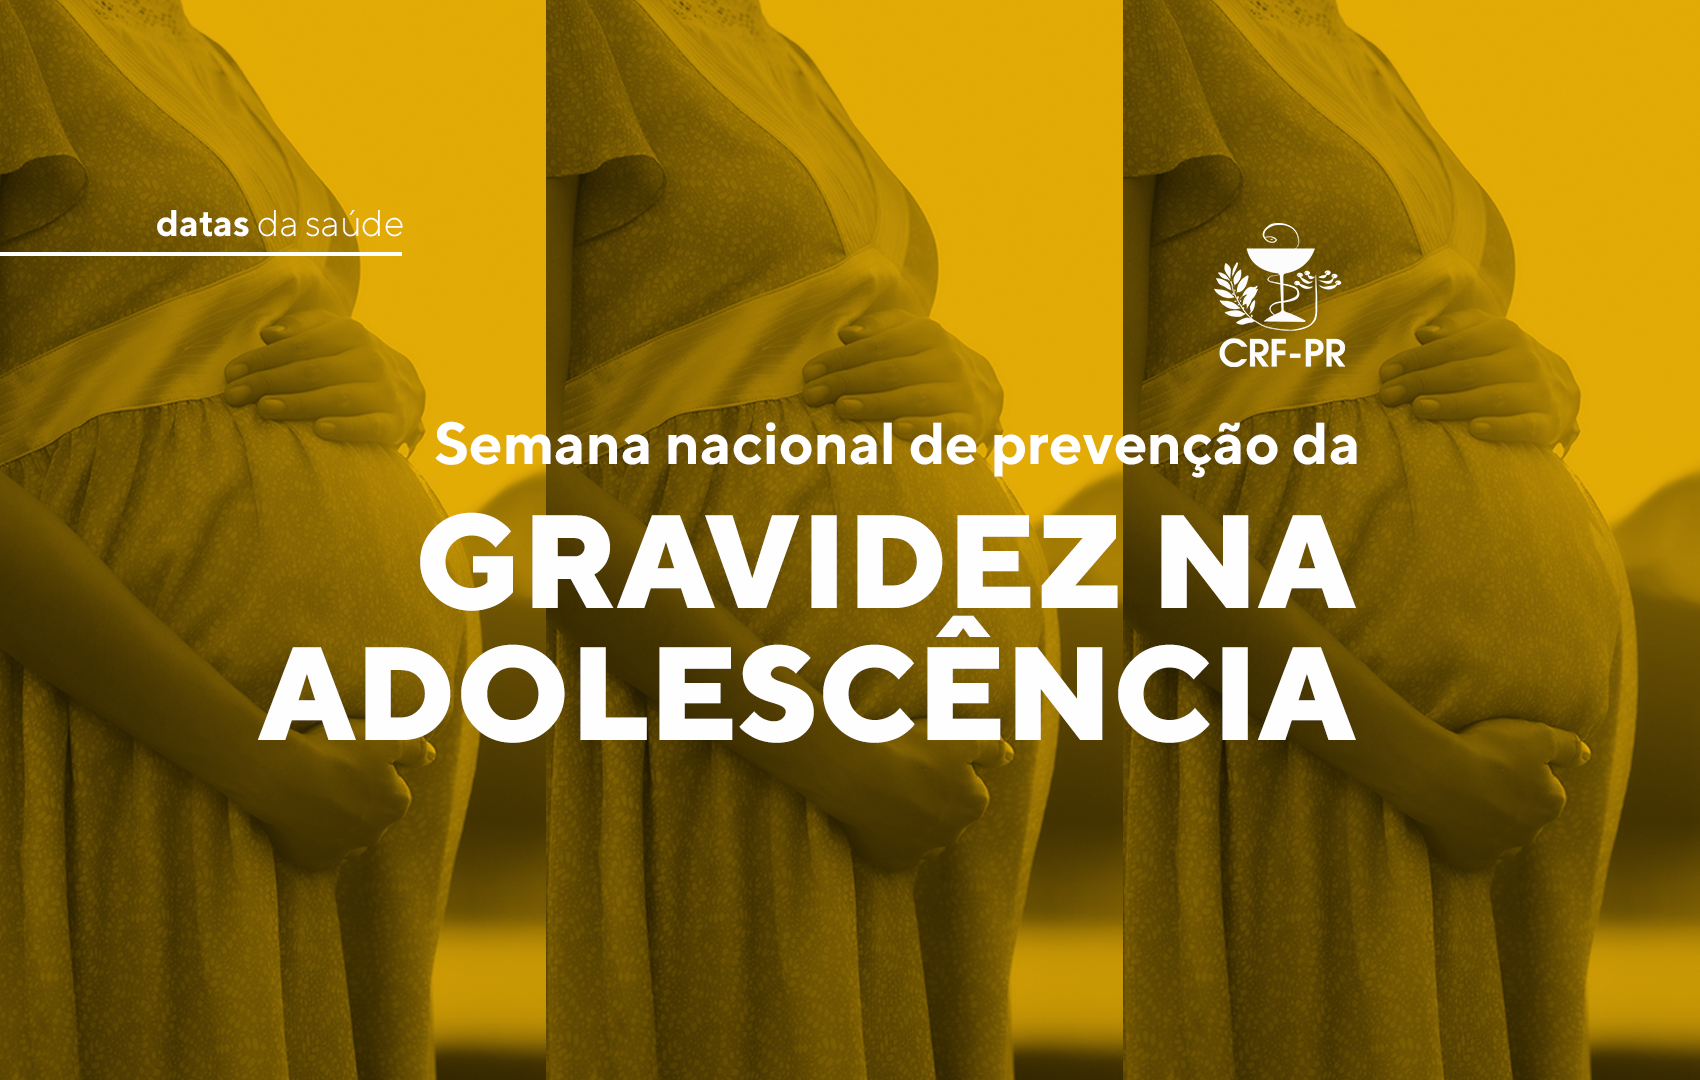 01_02_semana_nacional_de_prevenção_da_gravidez_na_adolescencia_site.png